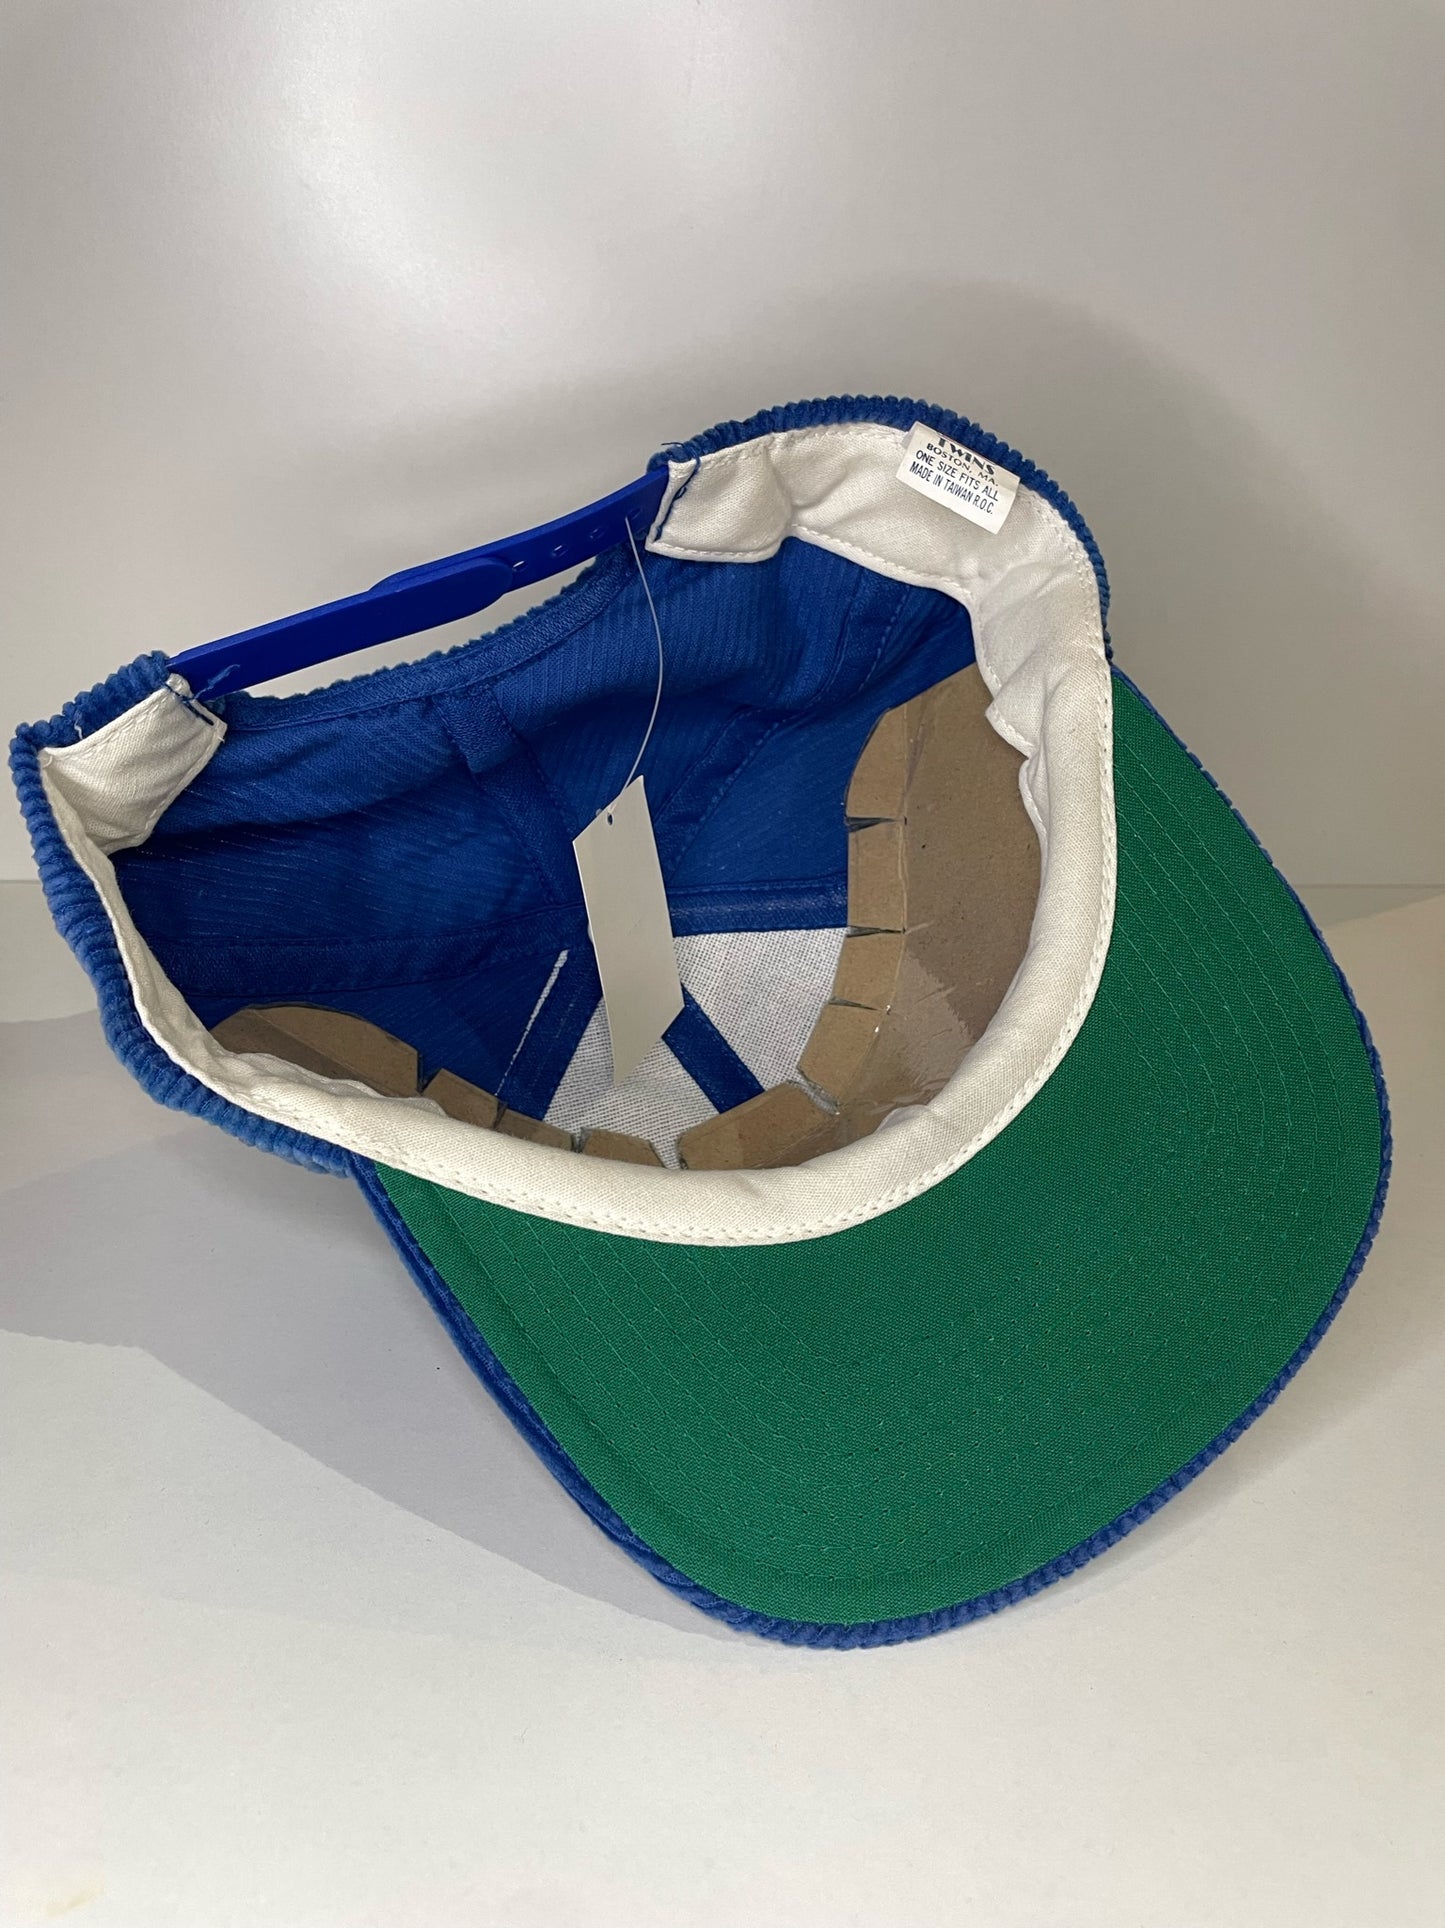 VINTAGE 90s NEW YORK METS TWINS CORDUROY SNAPBACK CAP HAT